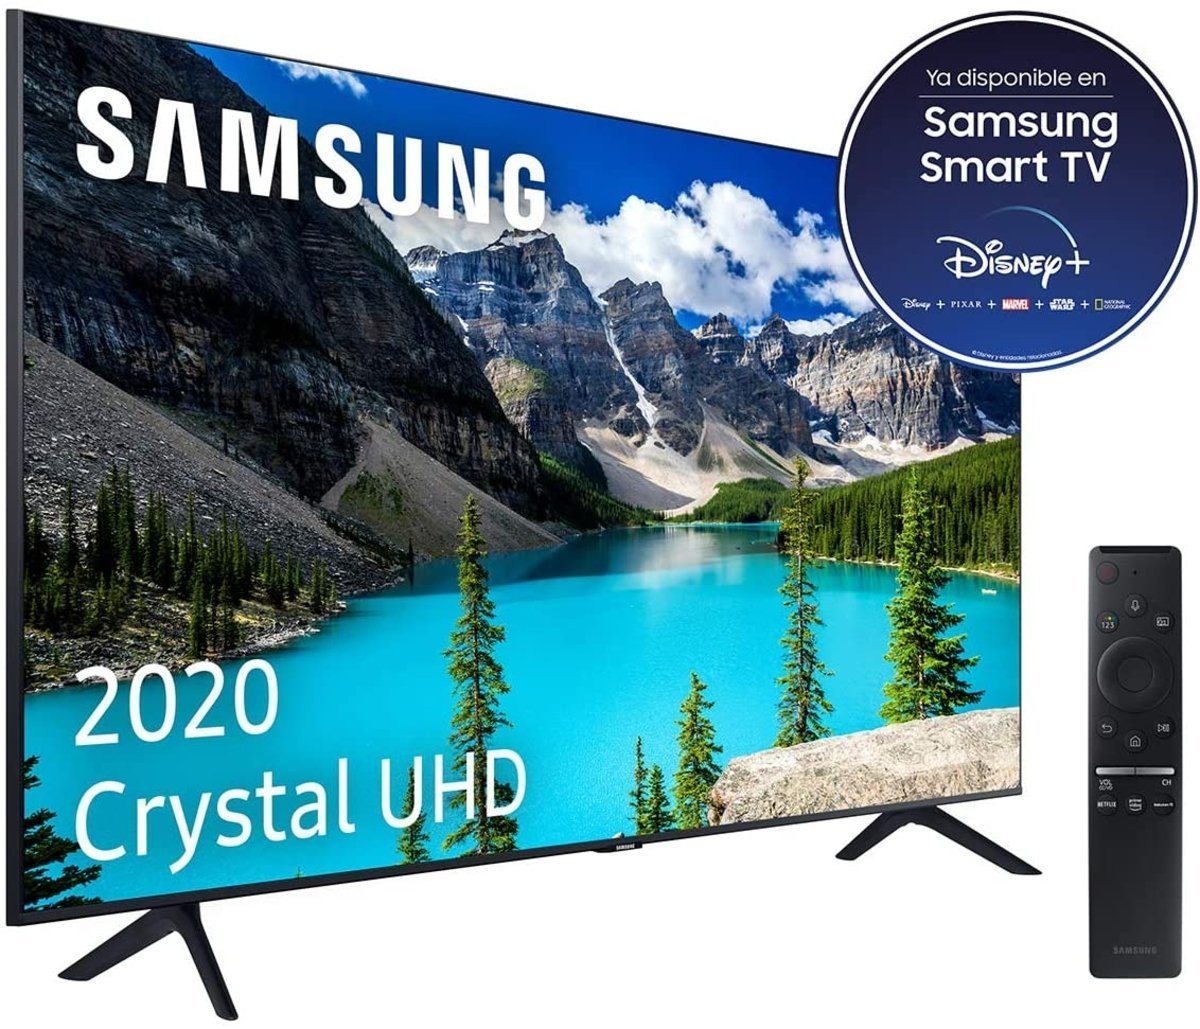 Casi 150 euros de descuento en esta gigantesca televisión de Samsung